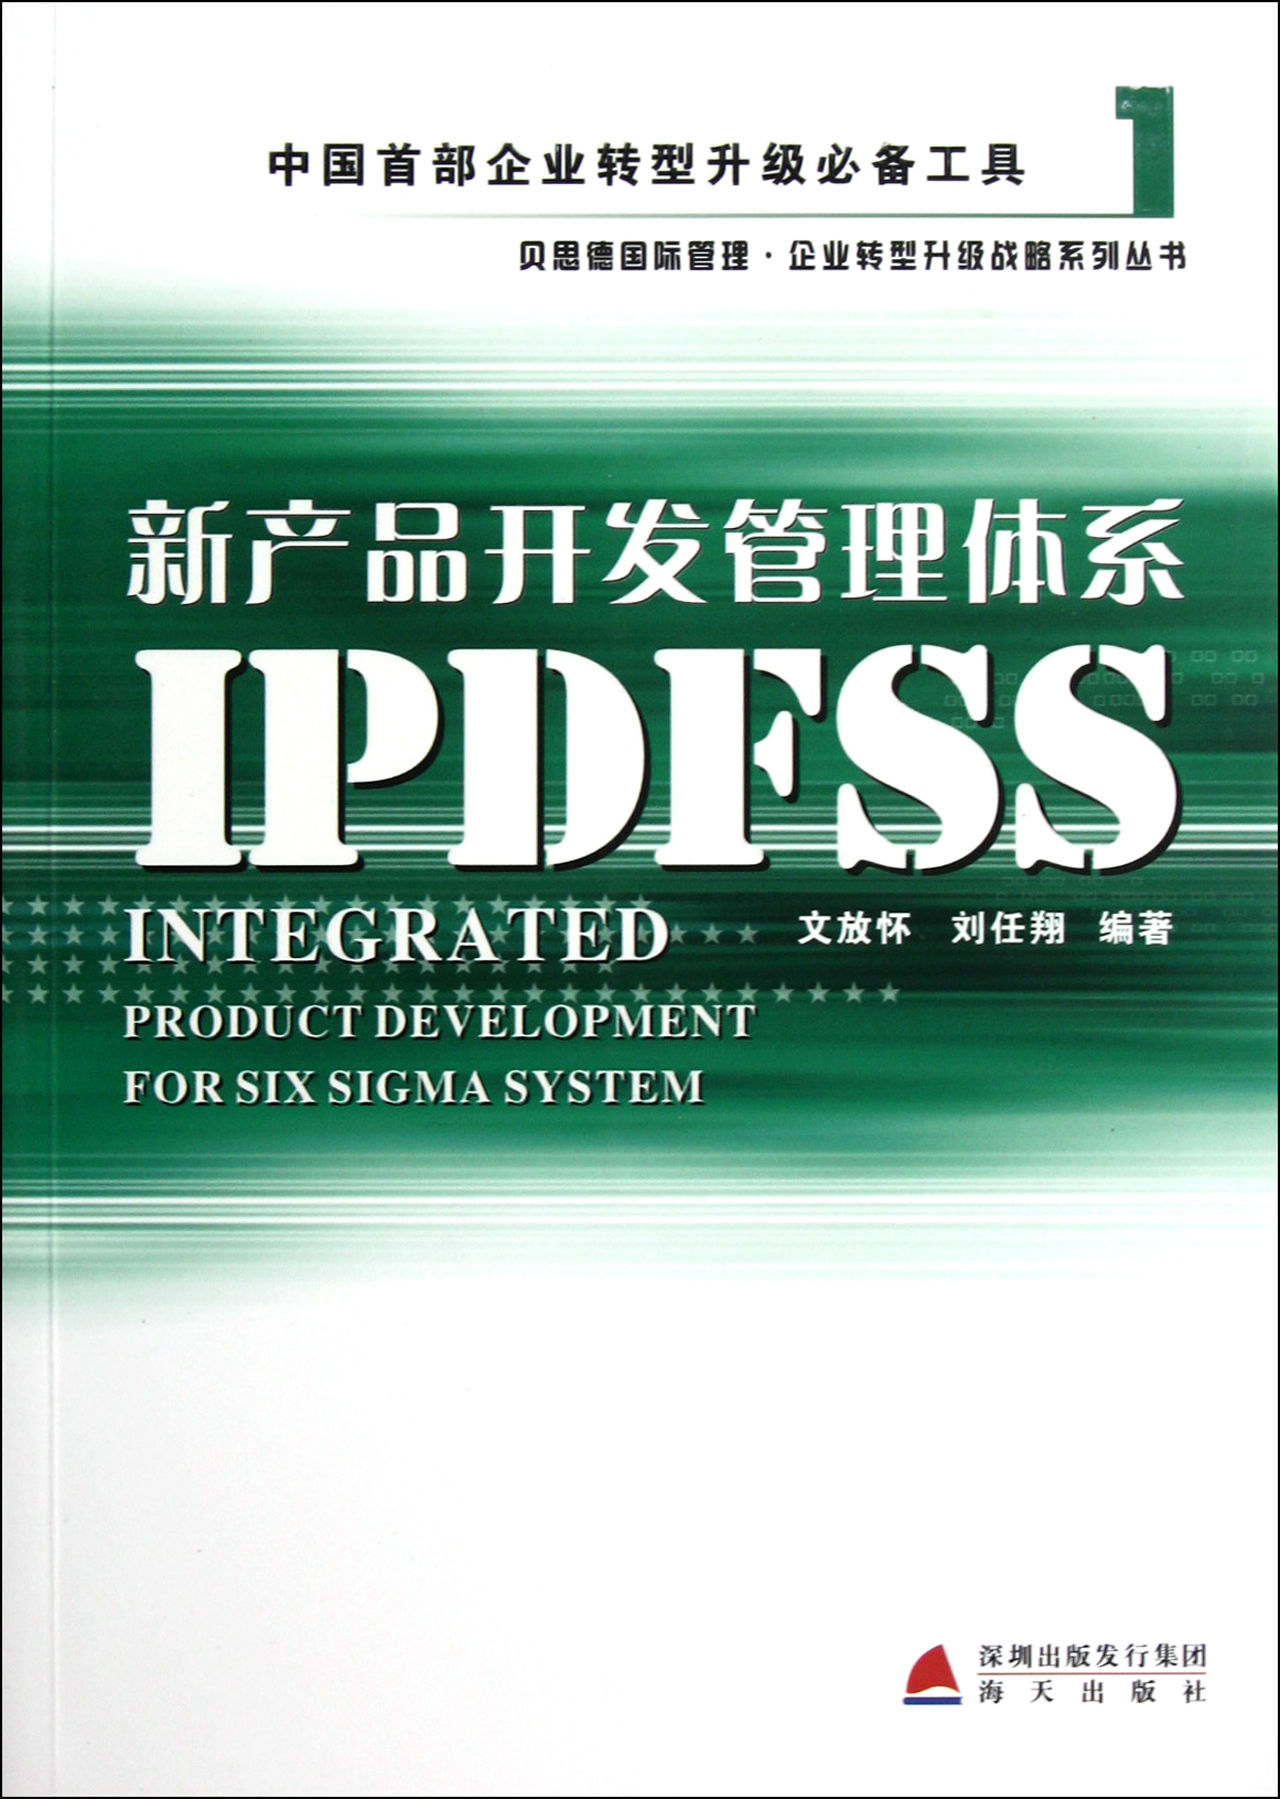 新產品開發管理體系IPDFSS